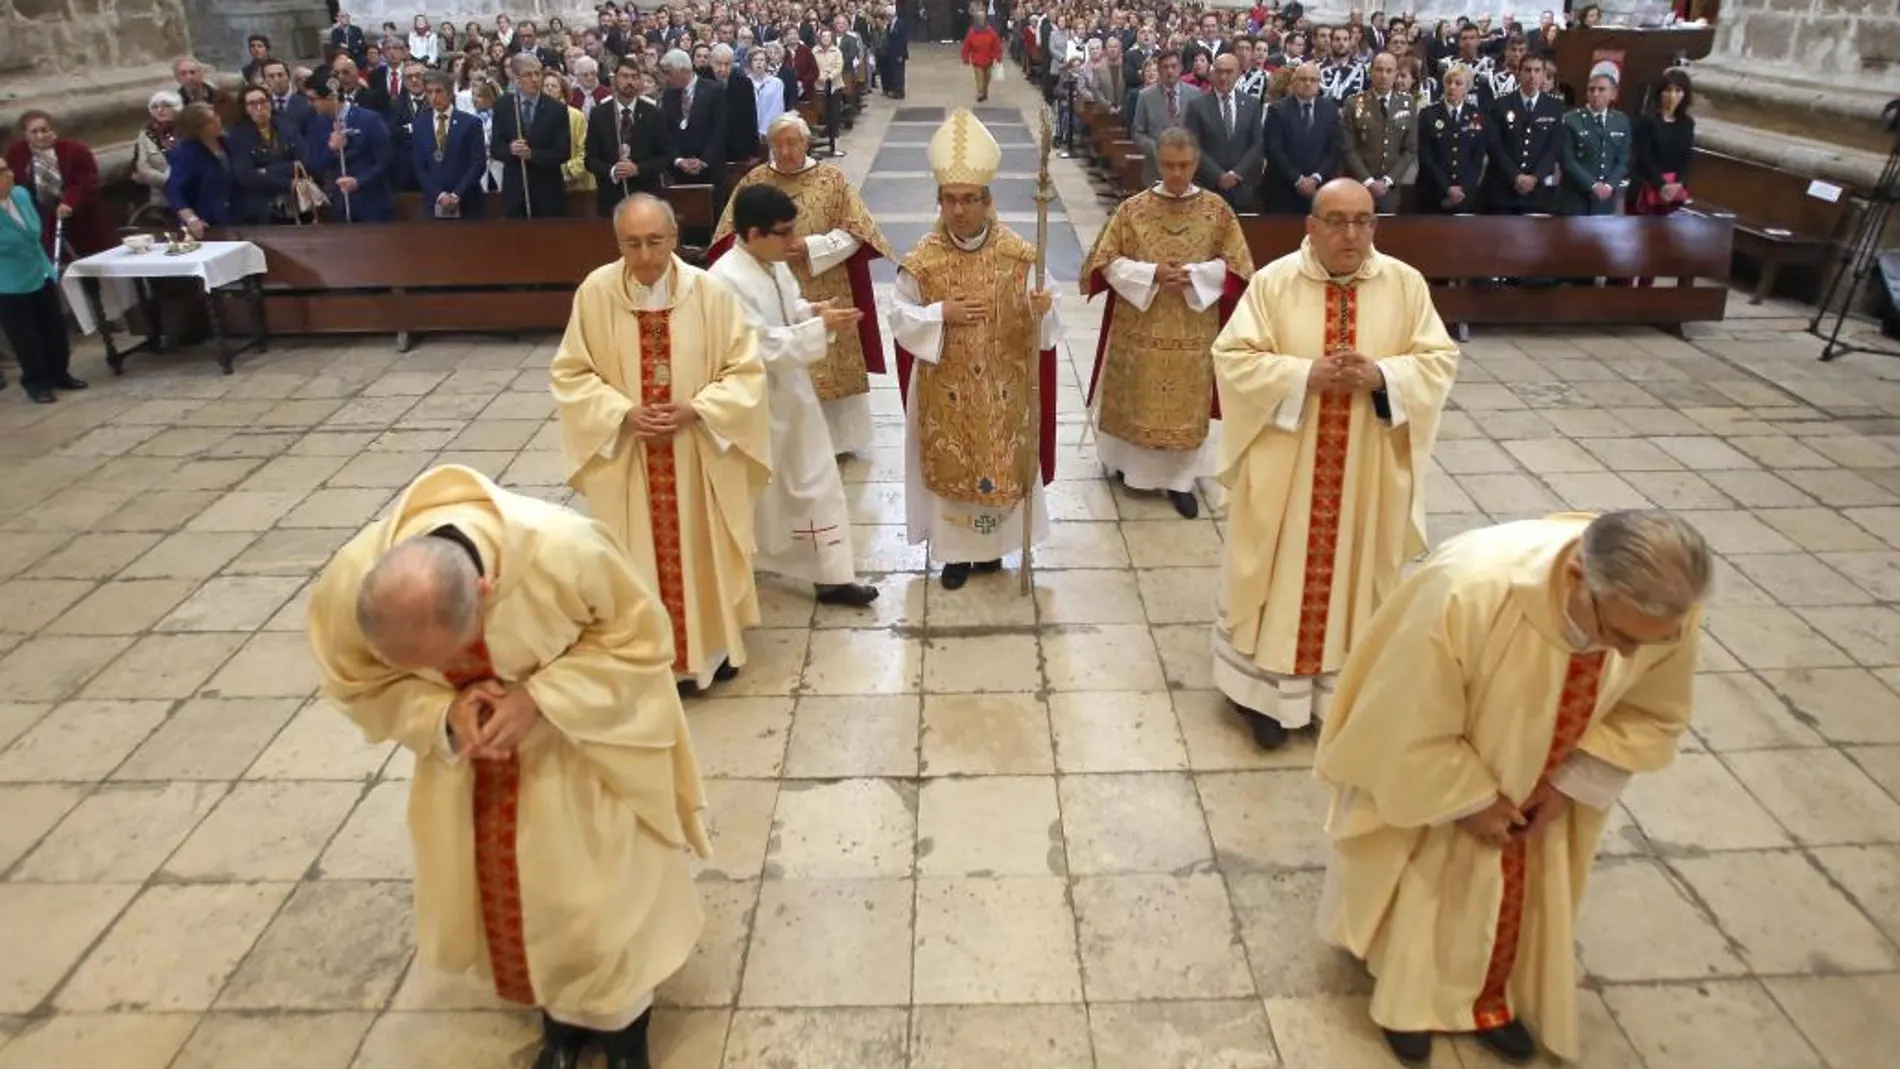 Misa en honor al patrón de Valladolid, San Pedro Regalado, oficiada por el obispo auxiliar de Valladolid, Luis Argüello, ante cientos de fieles